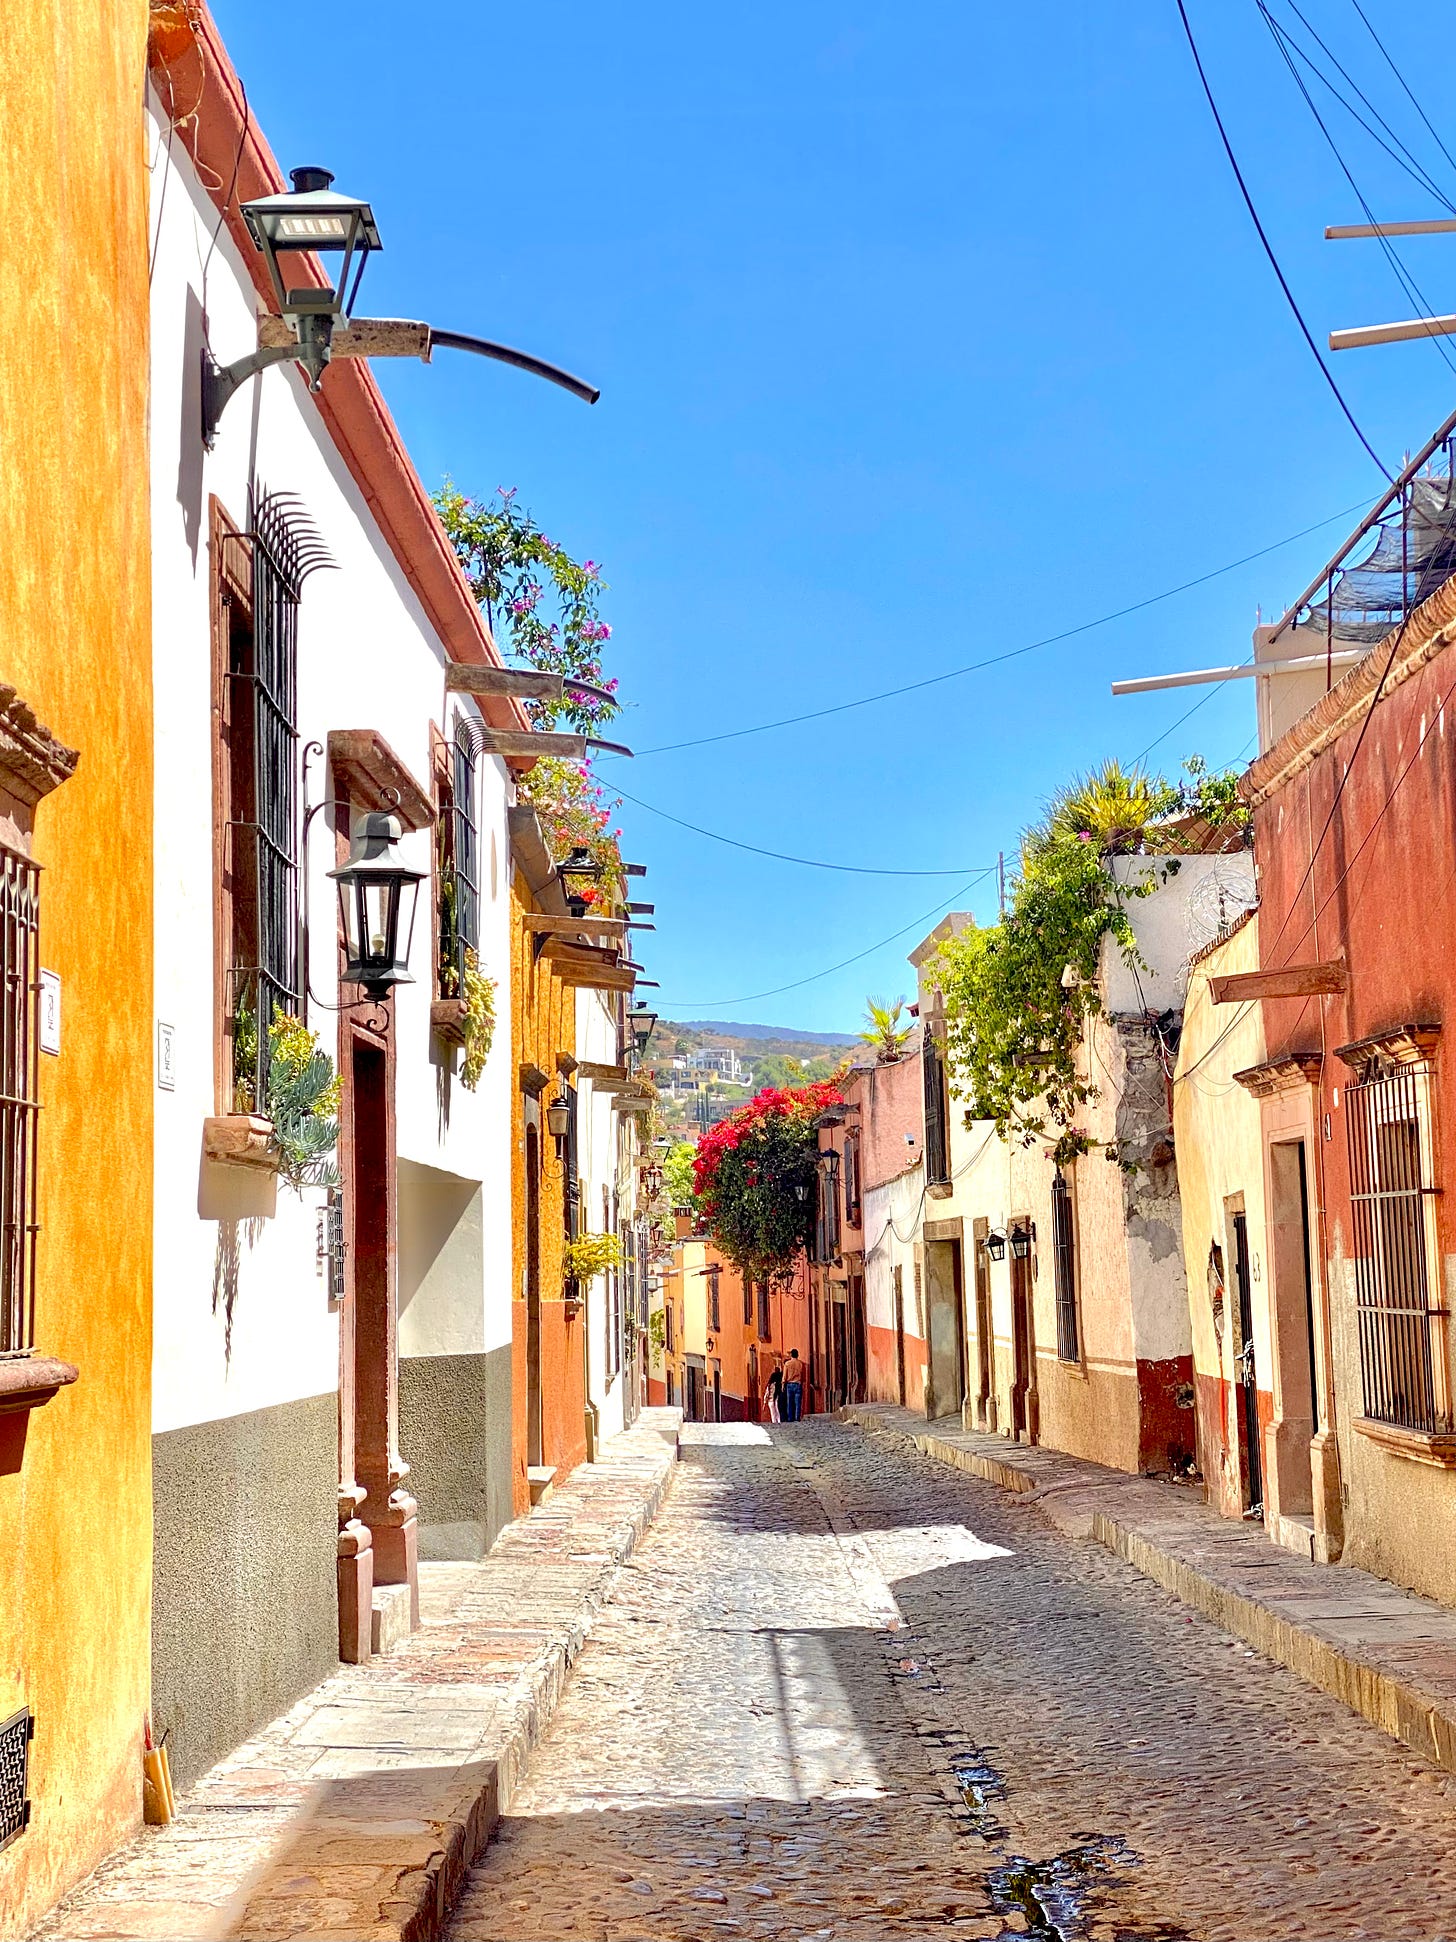 Streets of San Miguel de Allende, Mexico